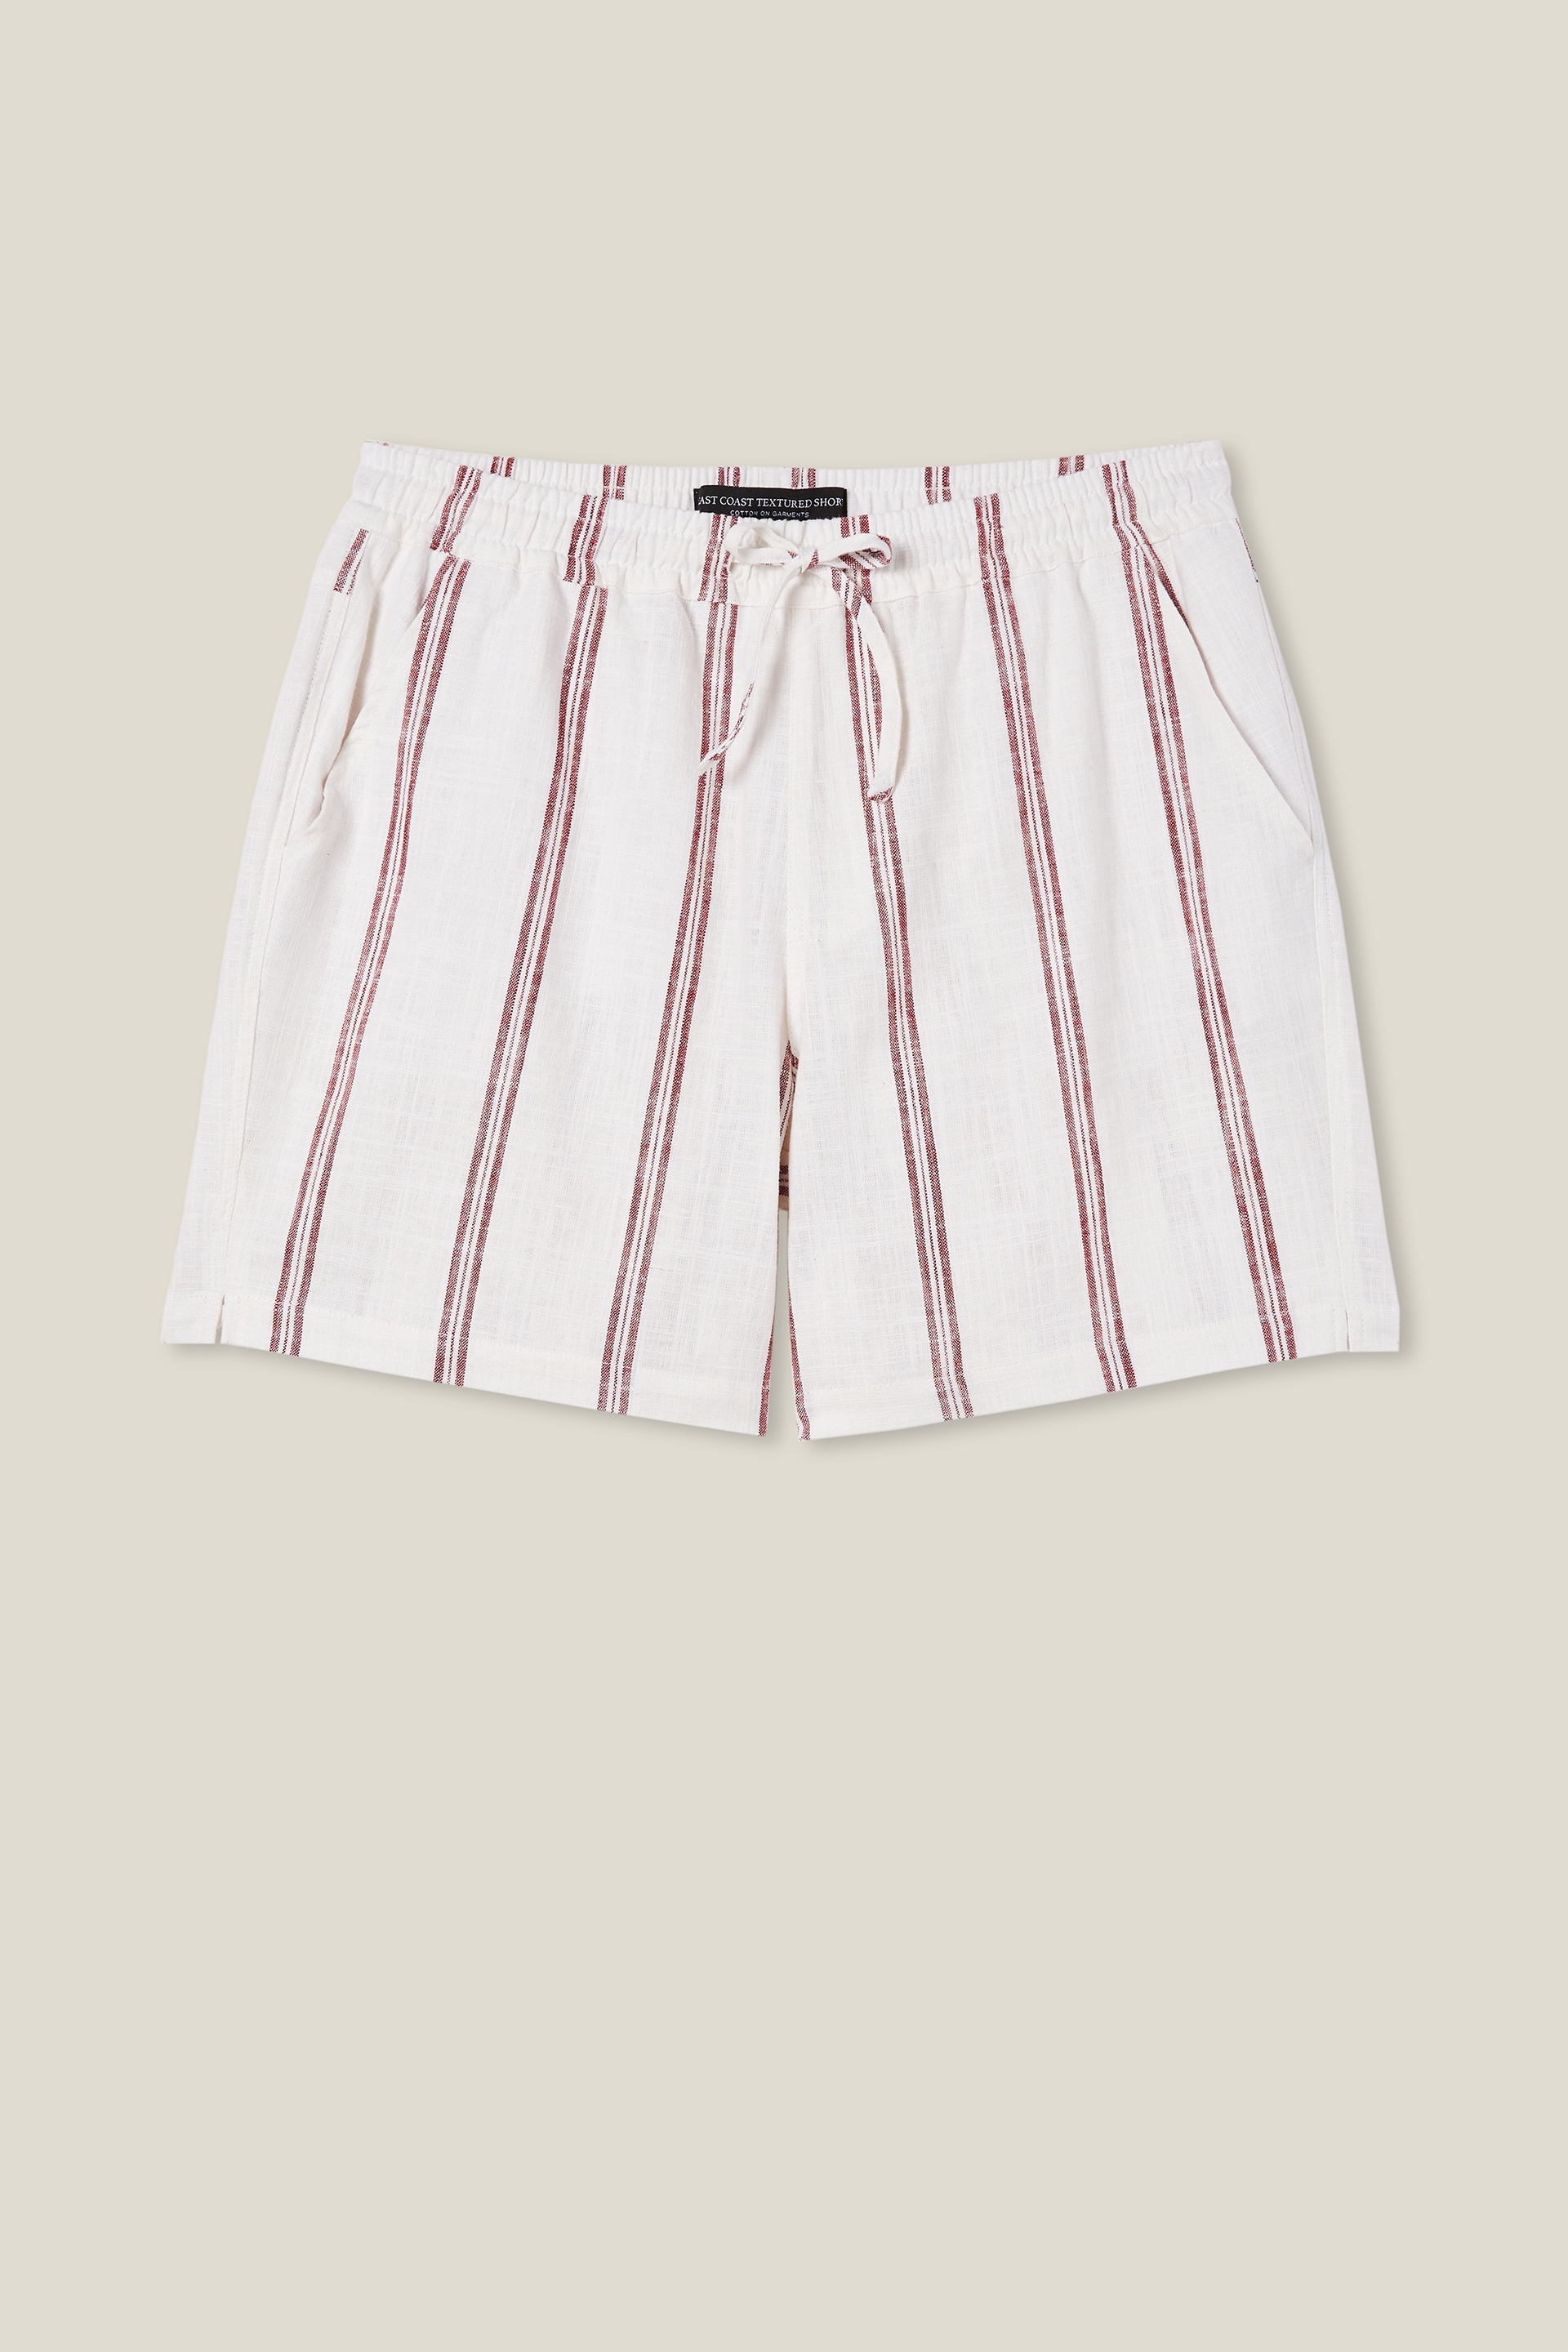 Cotton On Men - East Coast Textured Short - White raspberry stripe